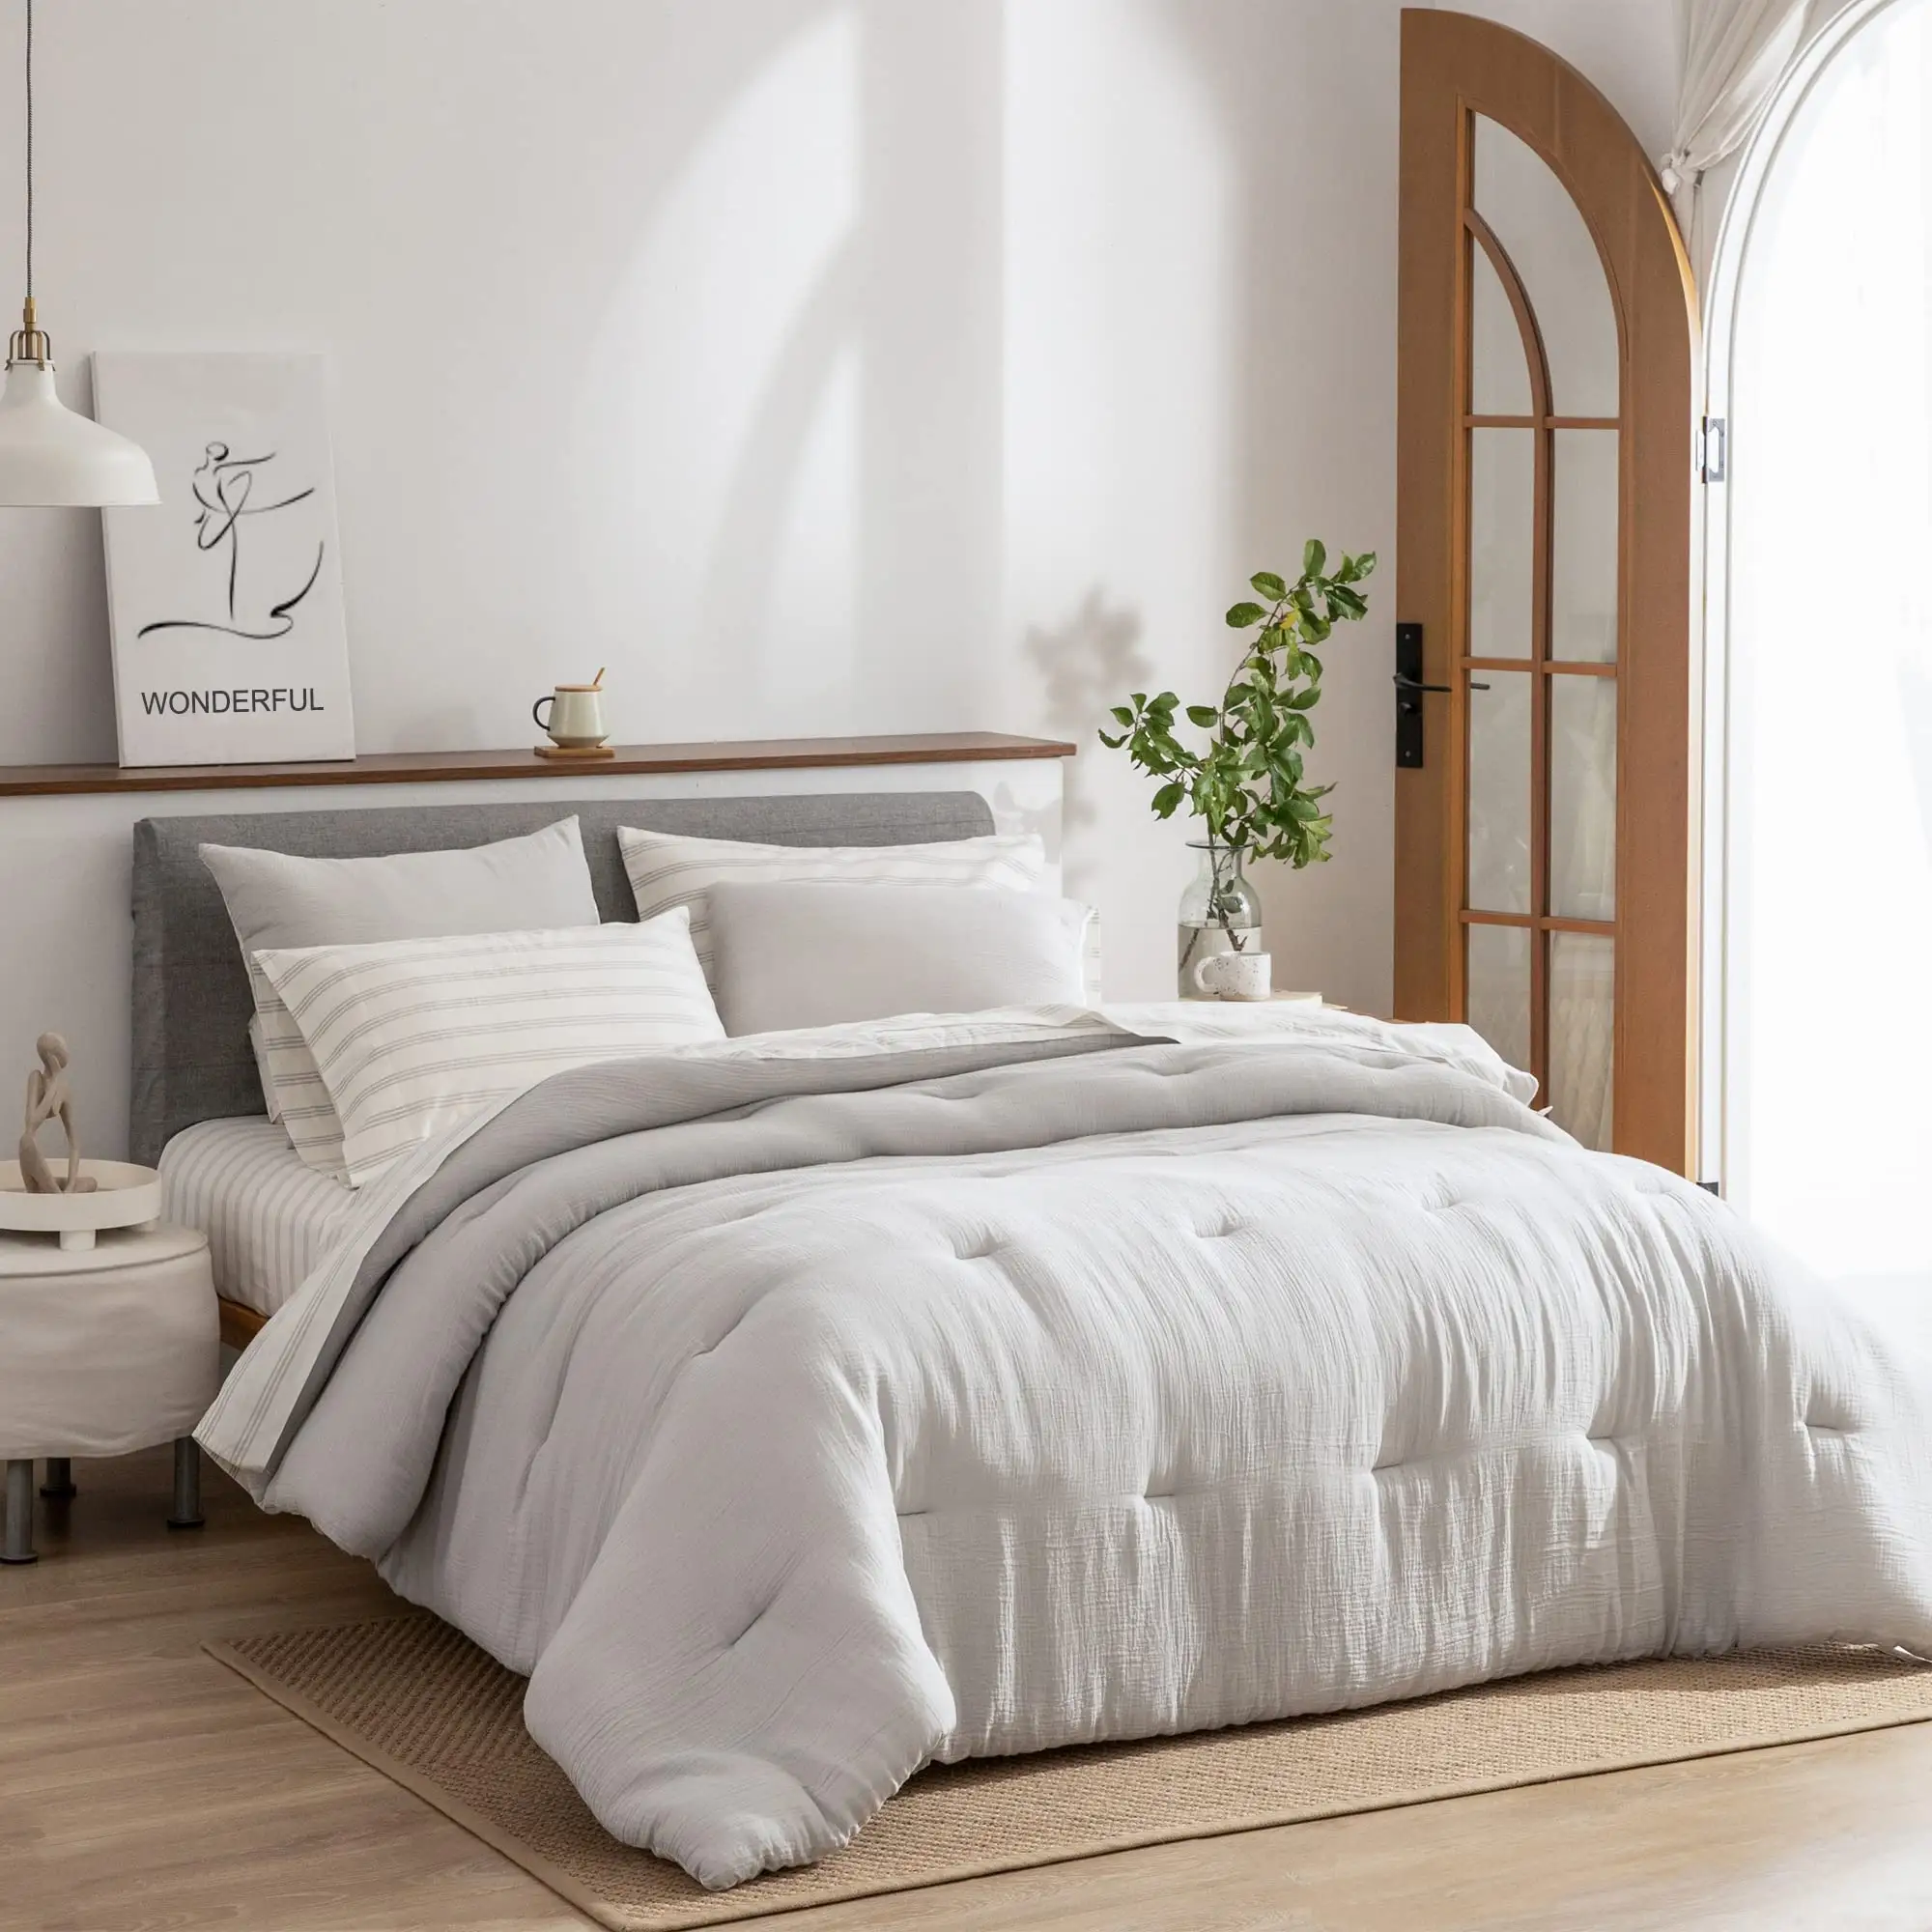 QSY pamuk yorgan yatak setleri, bir çantada gri yatak, yorgan seti ve gri çizgili levha seti ile yumuşak sıcak yatak setleri